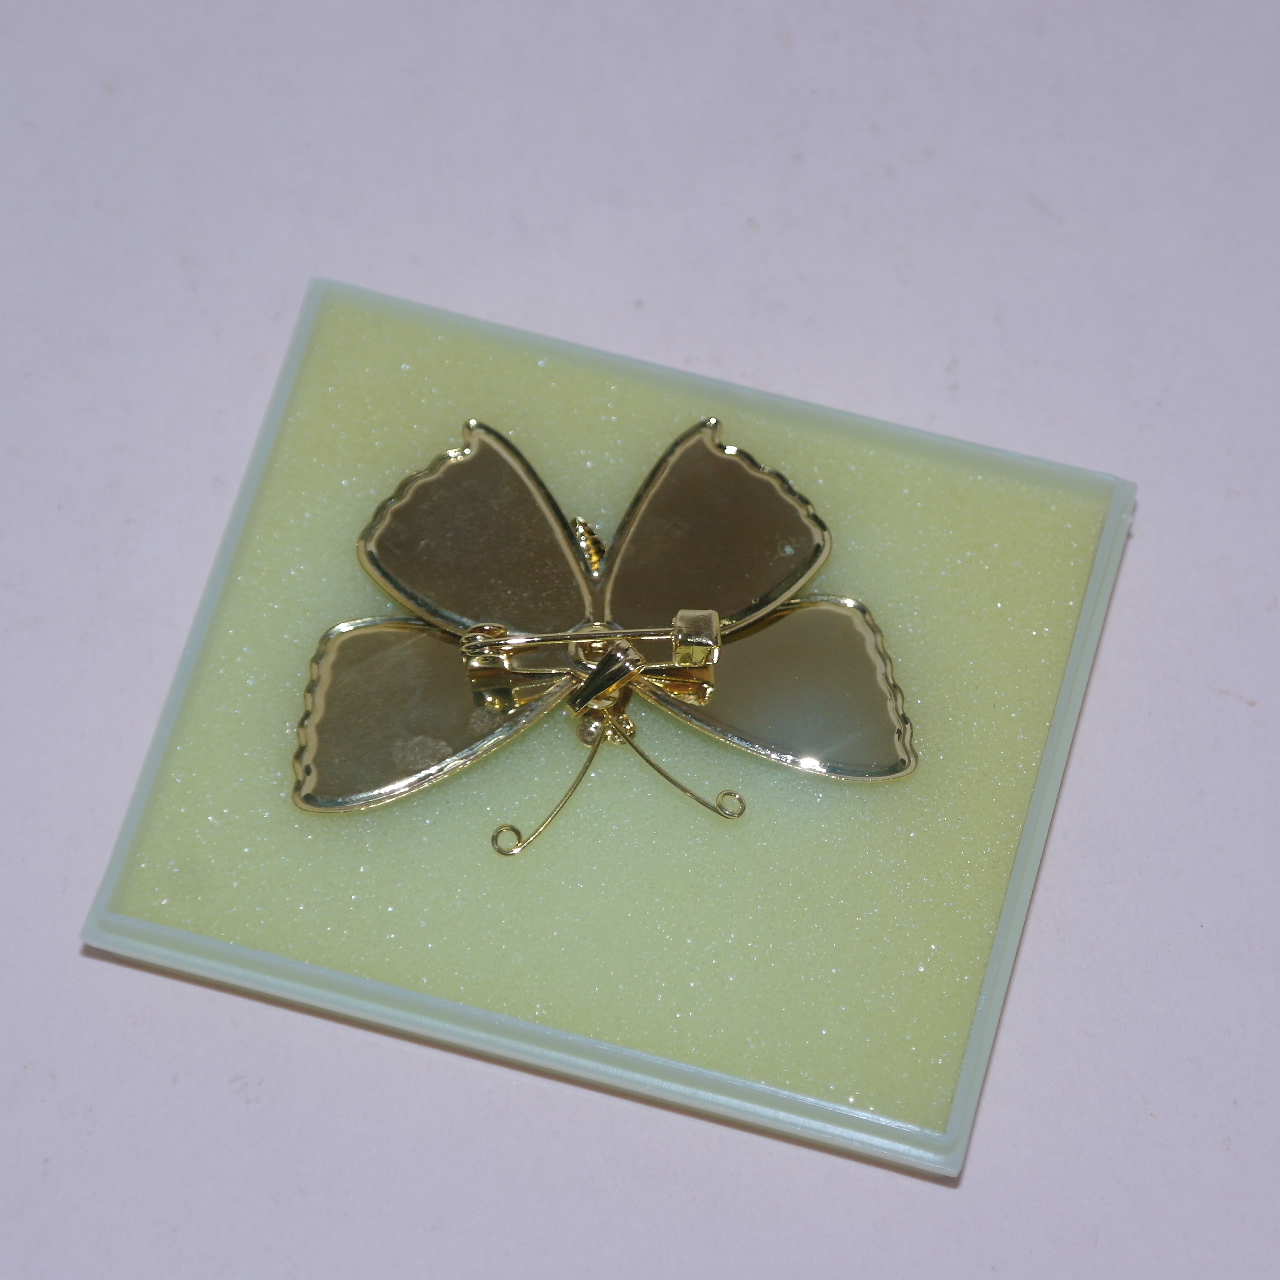 금속칠보로된 나비모양 브롯지